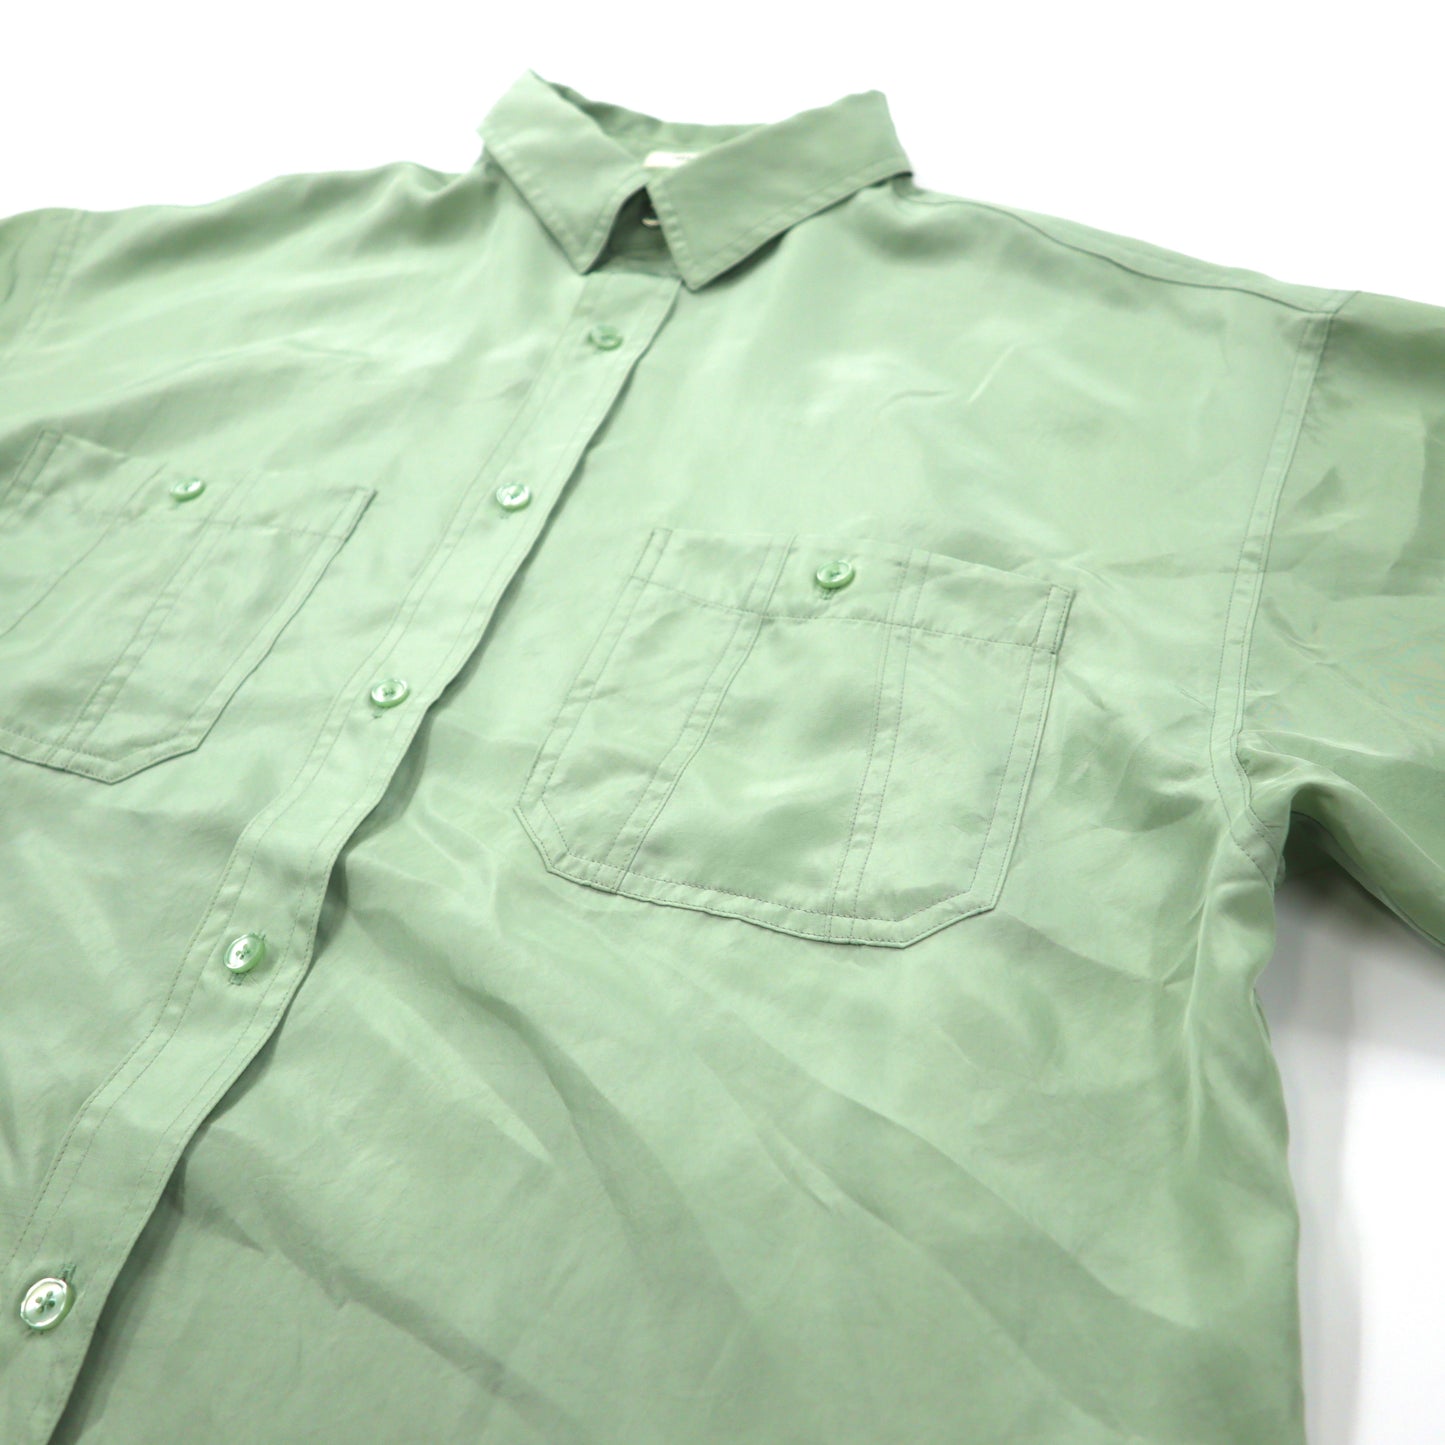 FREAK'S STORE ヴィンテージサテンL/Sシャツ FREE グリーン ポリエステル 201-3021